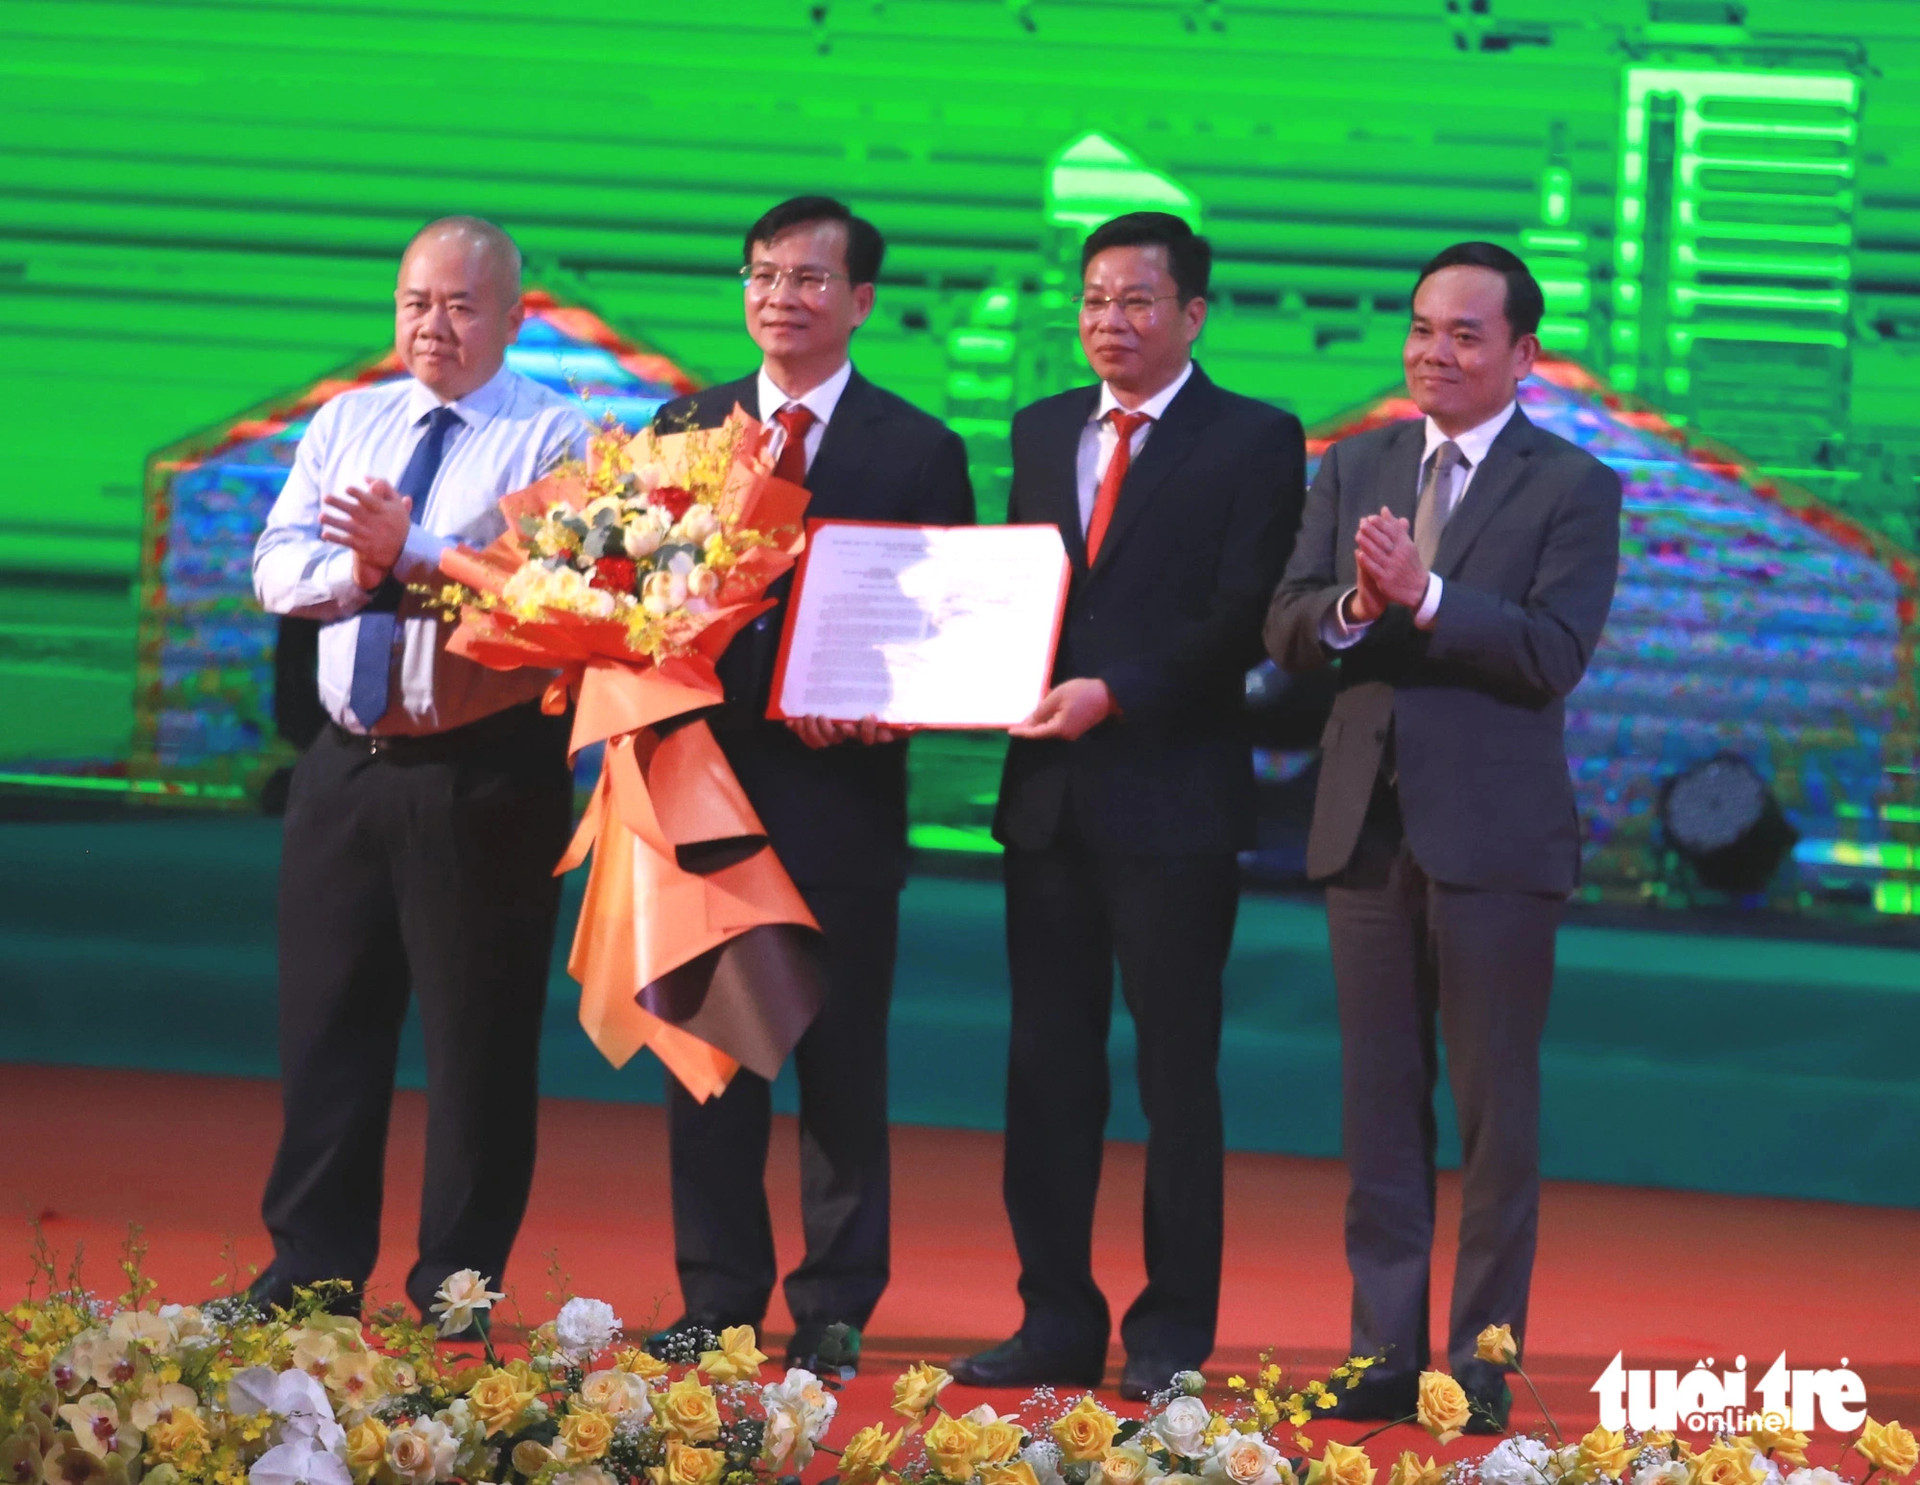 Lãnh đạo tỉnh Đắk Nông nhận quyết định quy hoạch tỉnh năm 2021-2030, tầm nhìn đến năm 2050 - Ảnh: TRUNG TÂN